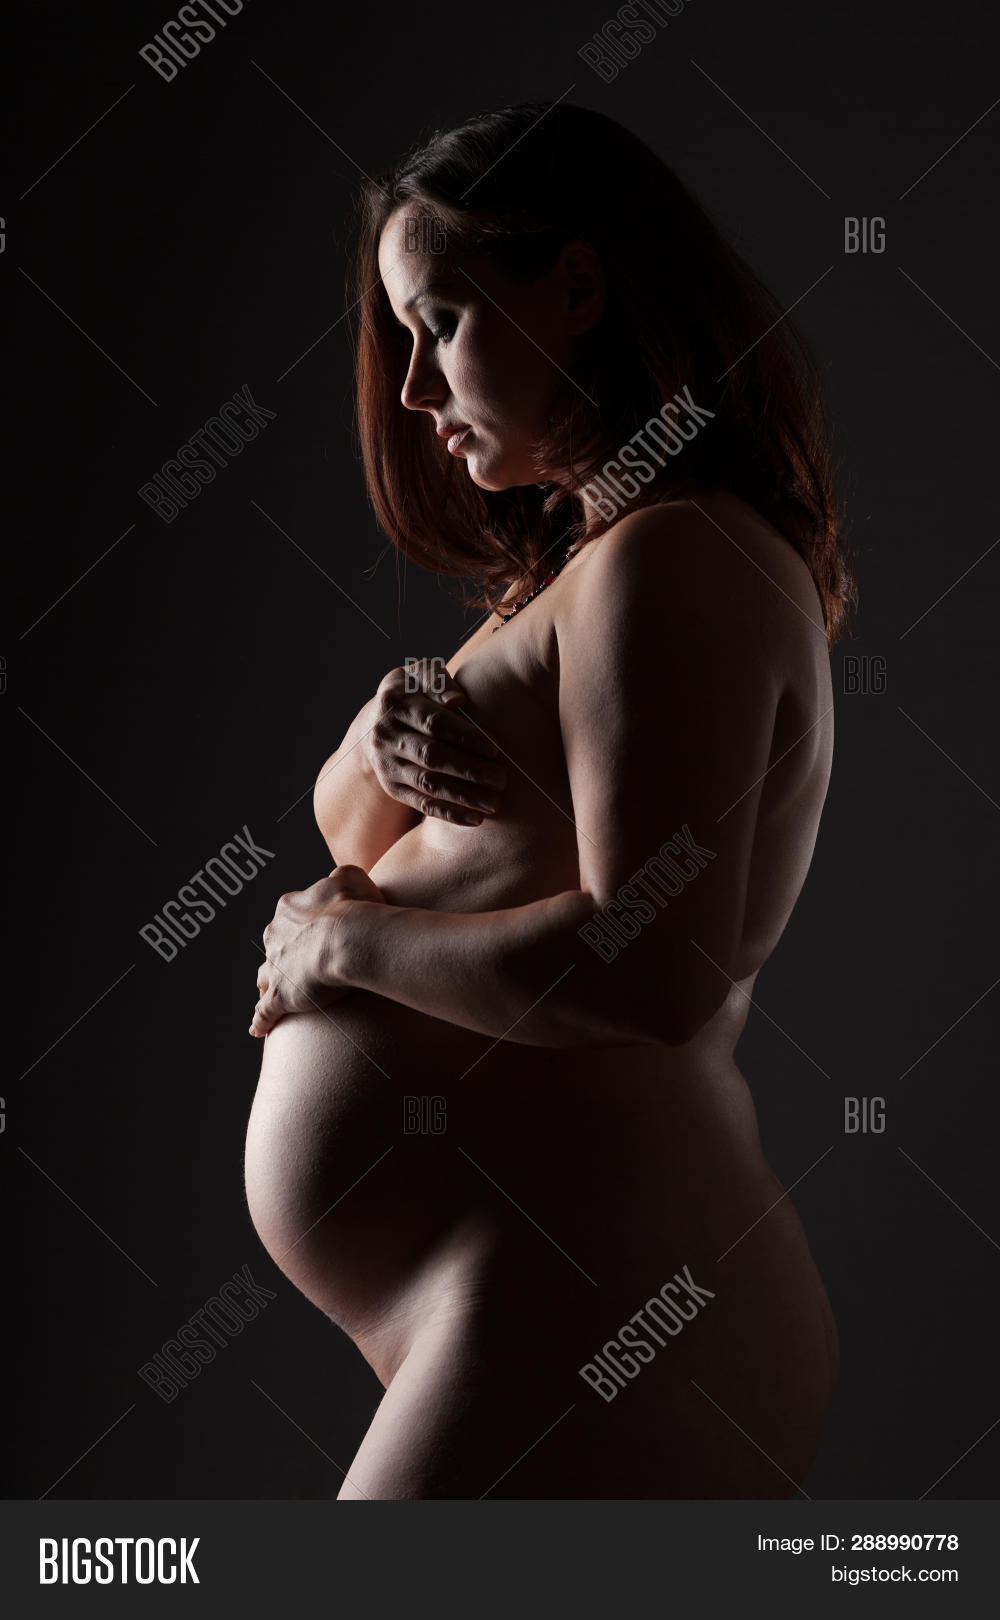 arjun jolly share nude pregnant woman photos